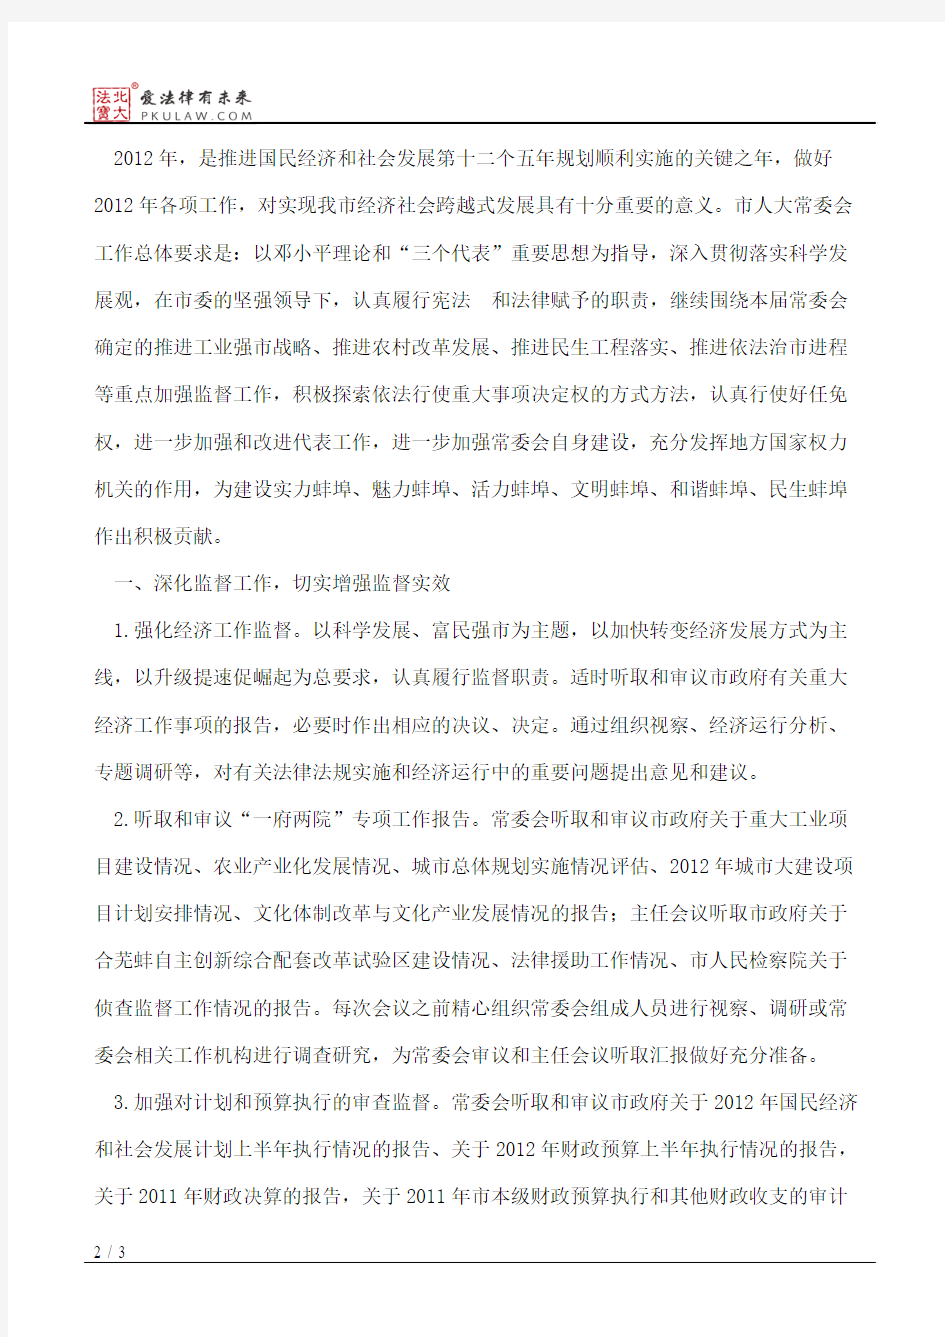 中共蚌埠市委关于转发《市人大常委会2012年工作要点》的通知